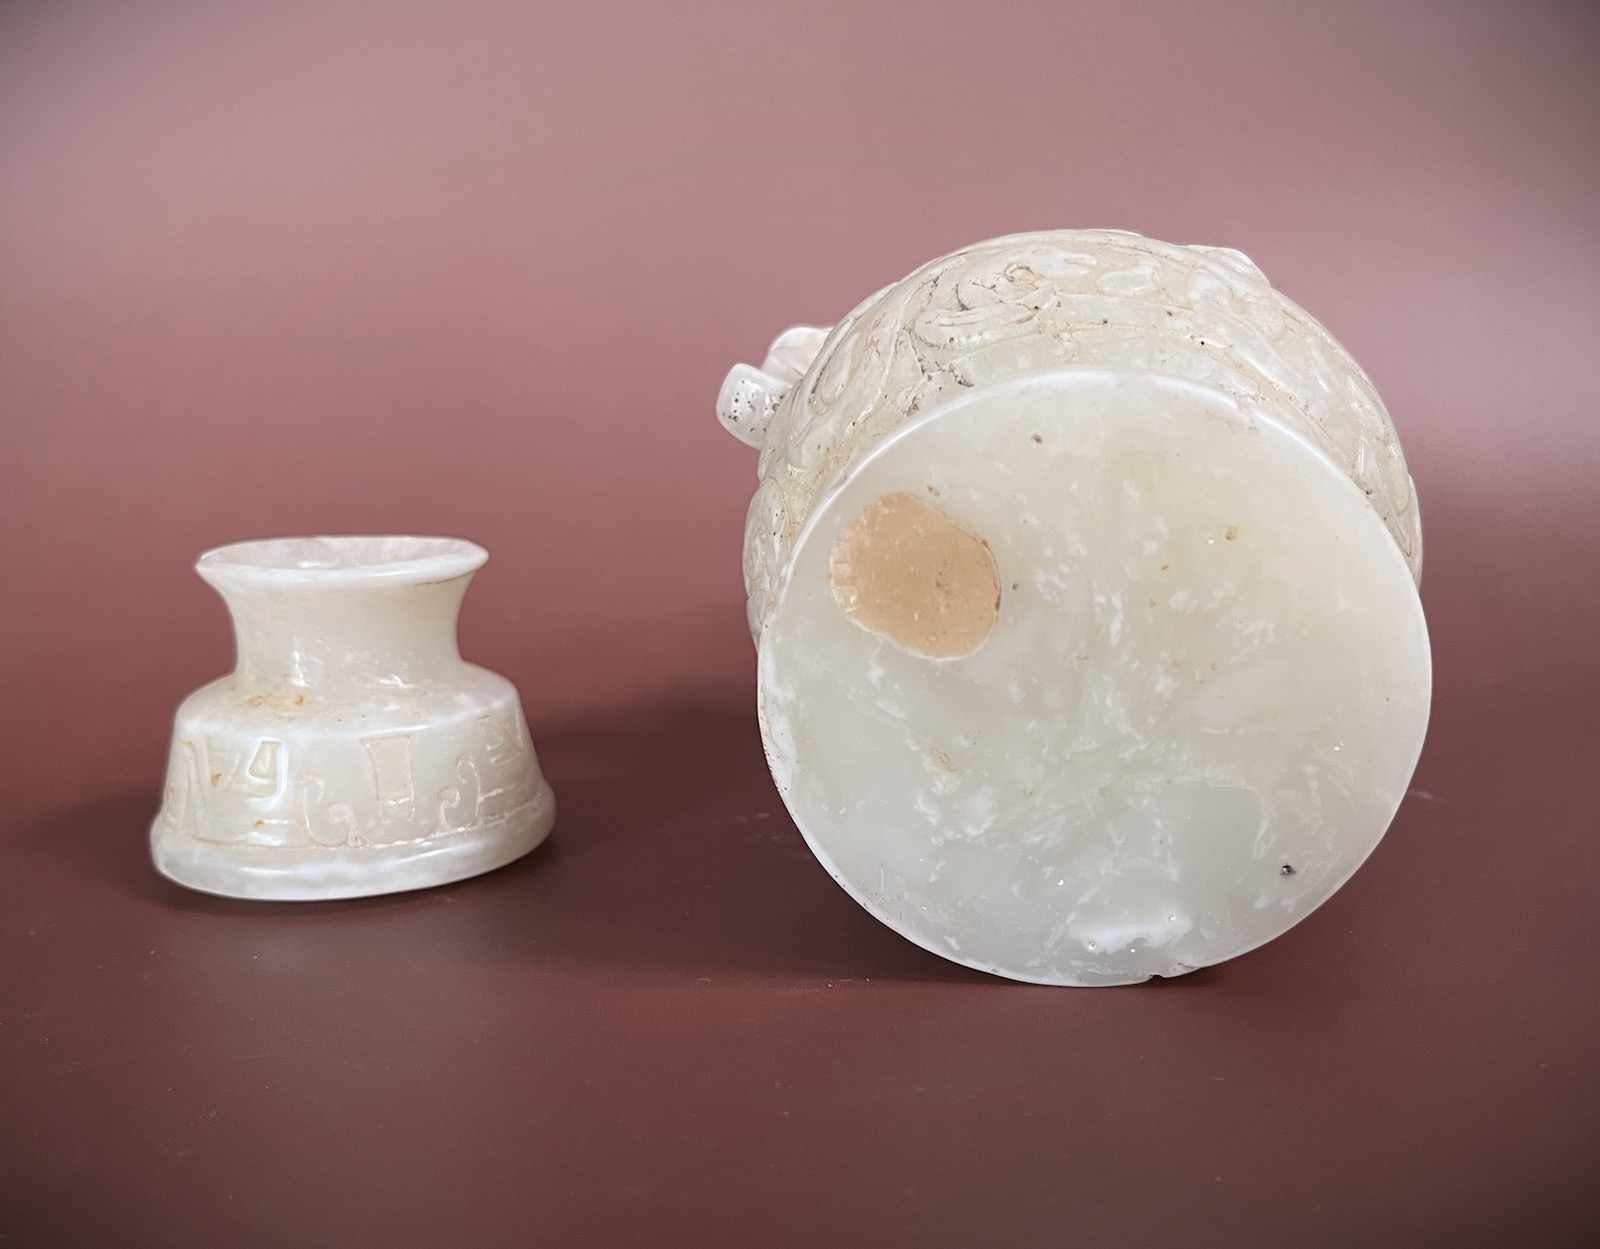 Tischvase Vase Asien LifeStyle Drachen Jade Henkel China